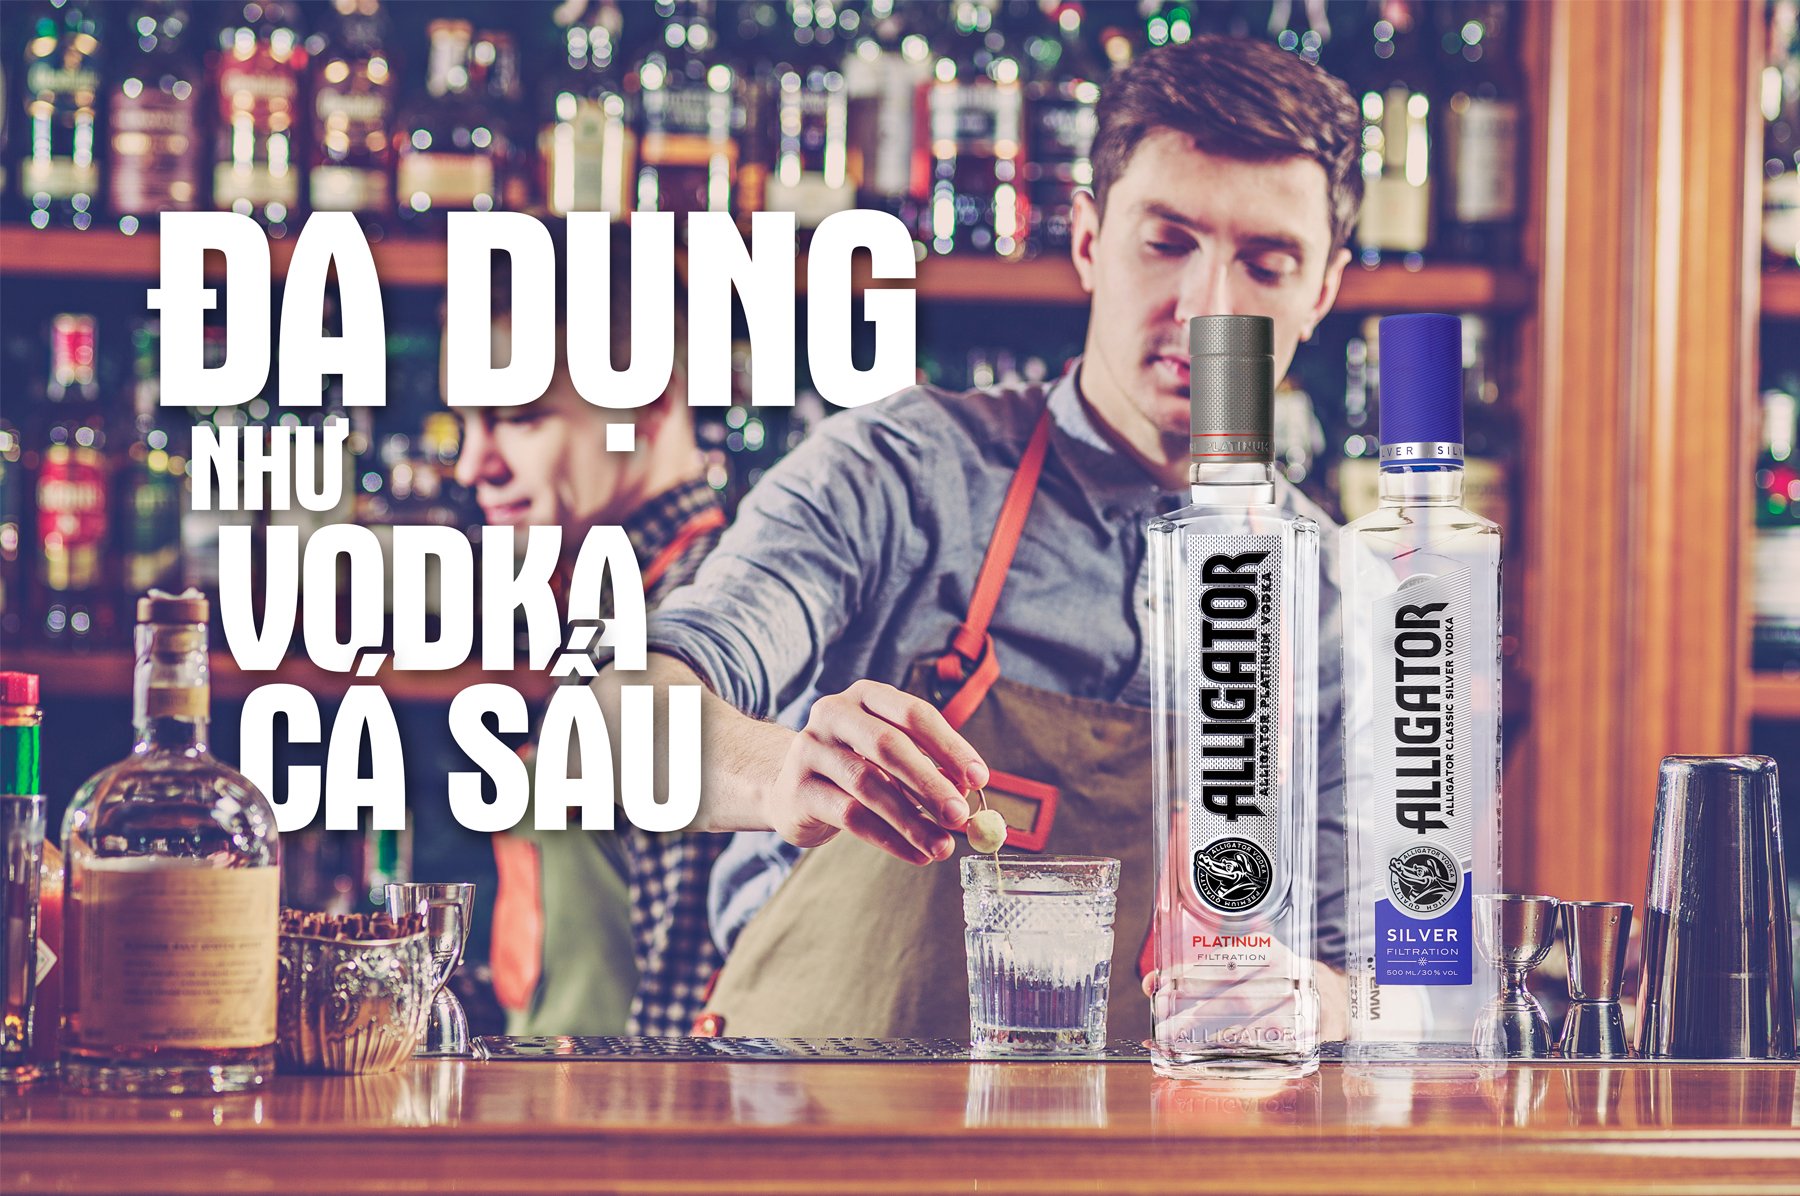 thuong-thuc-vodka-ca-sau-2